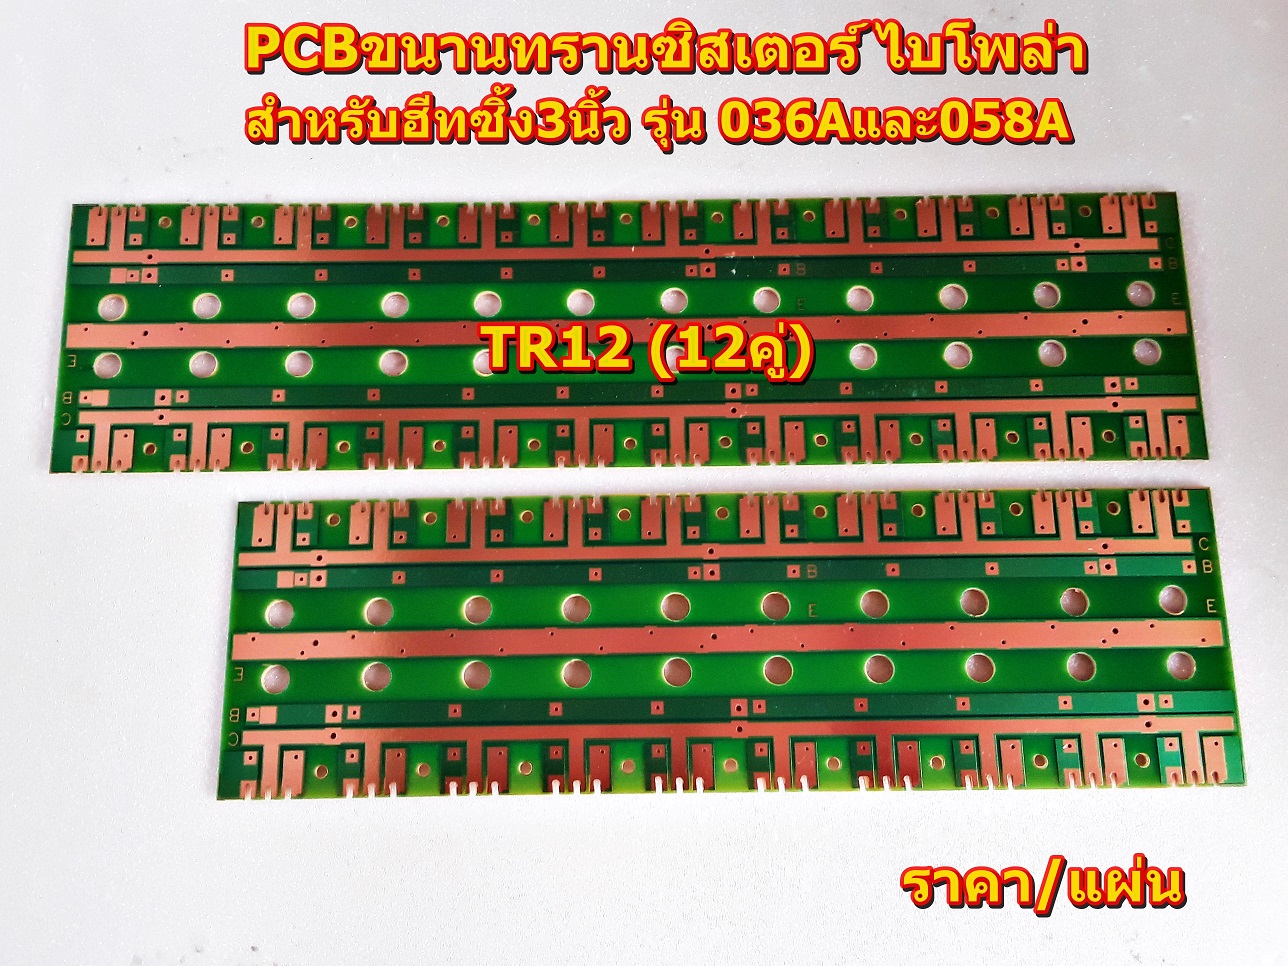 PCBขนานทรานซิสเตอร์ ไบโพล่าTR10คู่(TR_10), TR12คู่ (TR_12)สำหรับฮีทซิ้ง3นิ้ว รุ่น 036และ058 Amplifier Bord โมดูลขยายเสียง